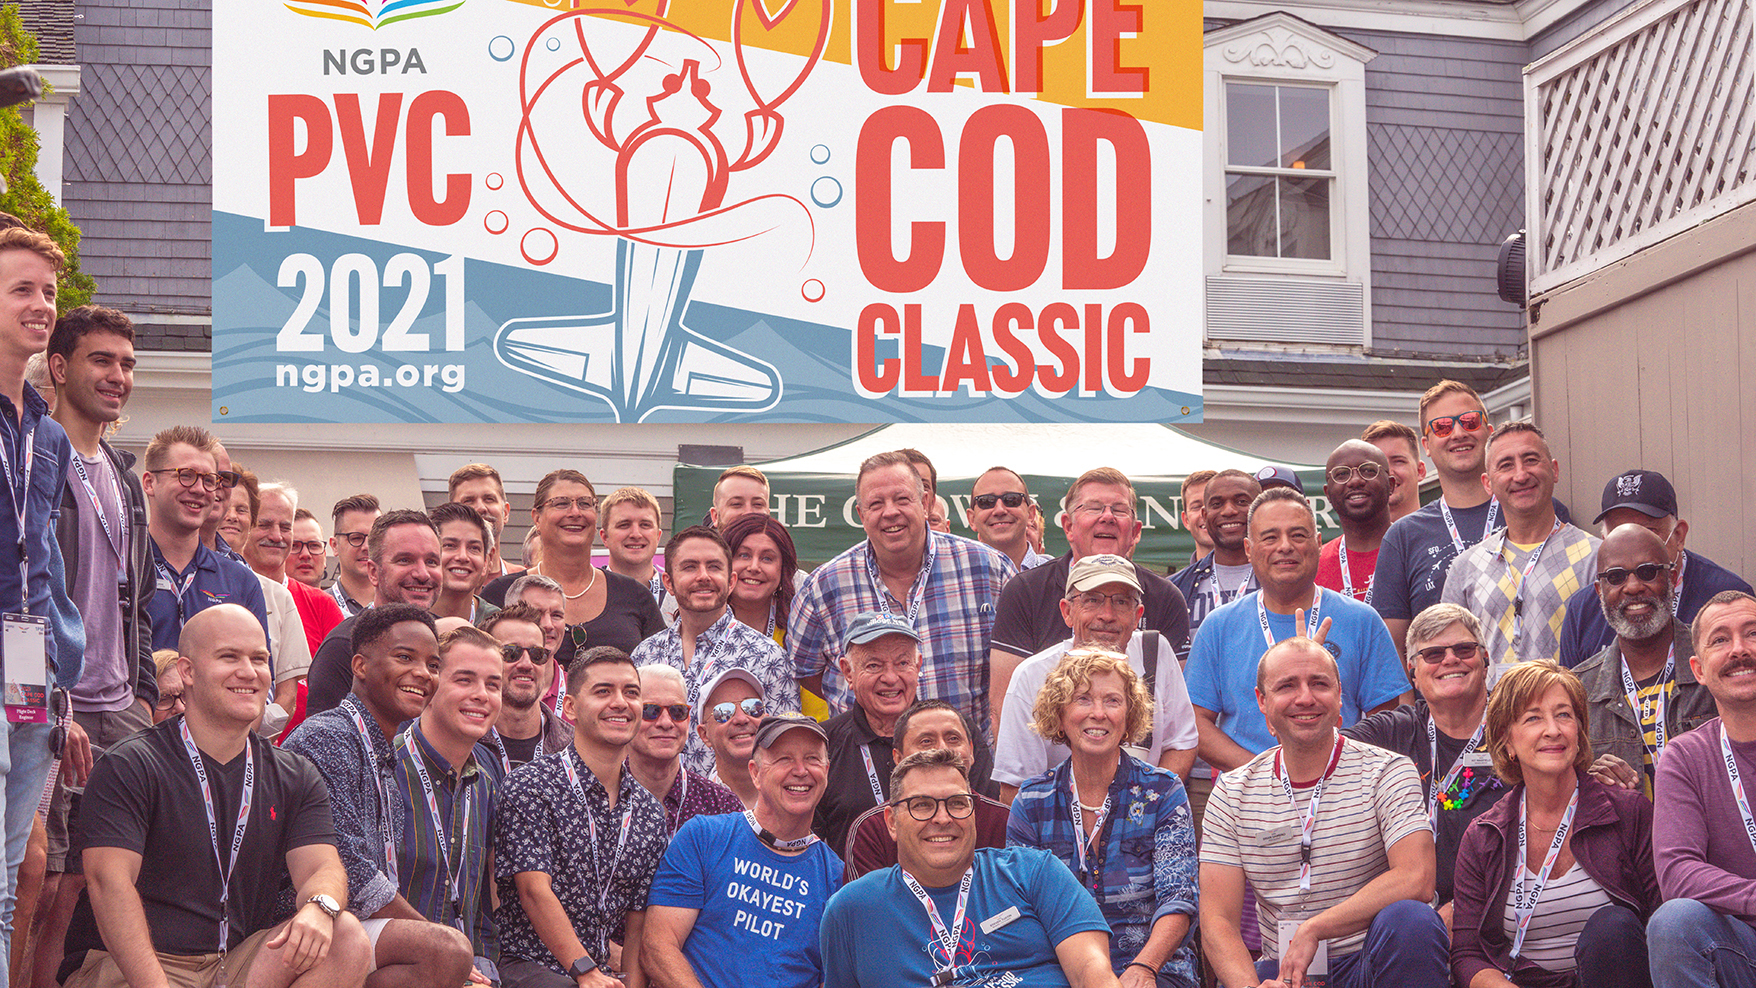 featured image four:NGPA Cape Cod Classic